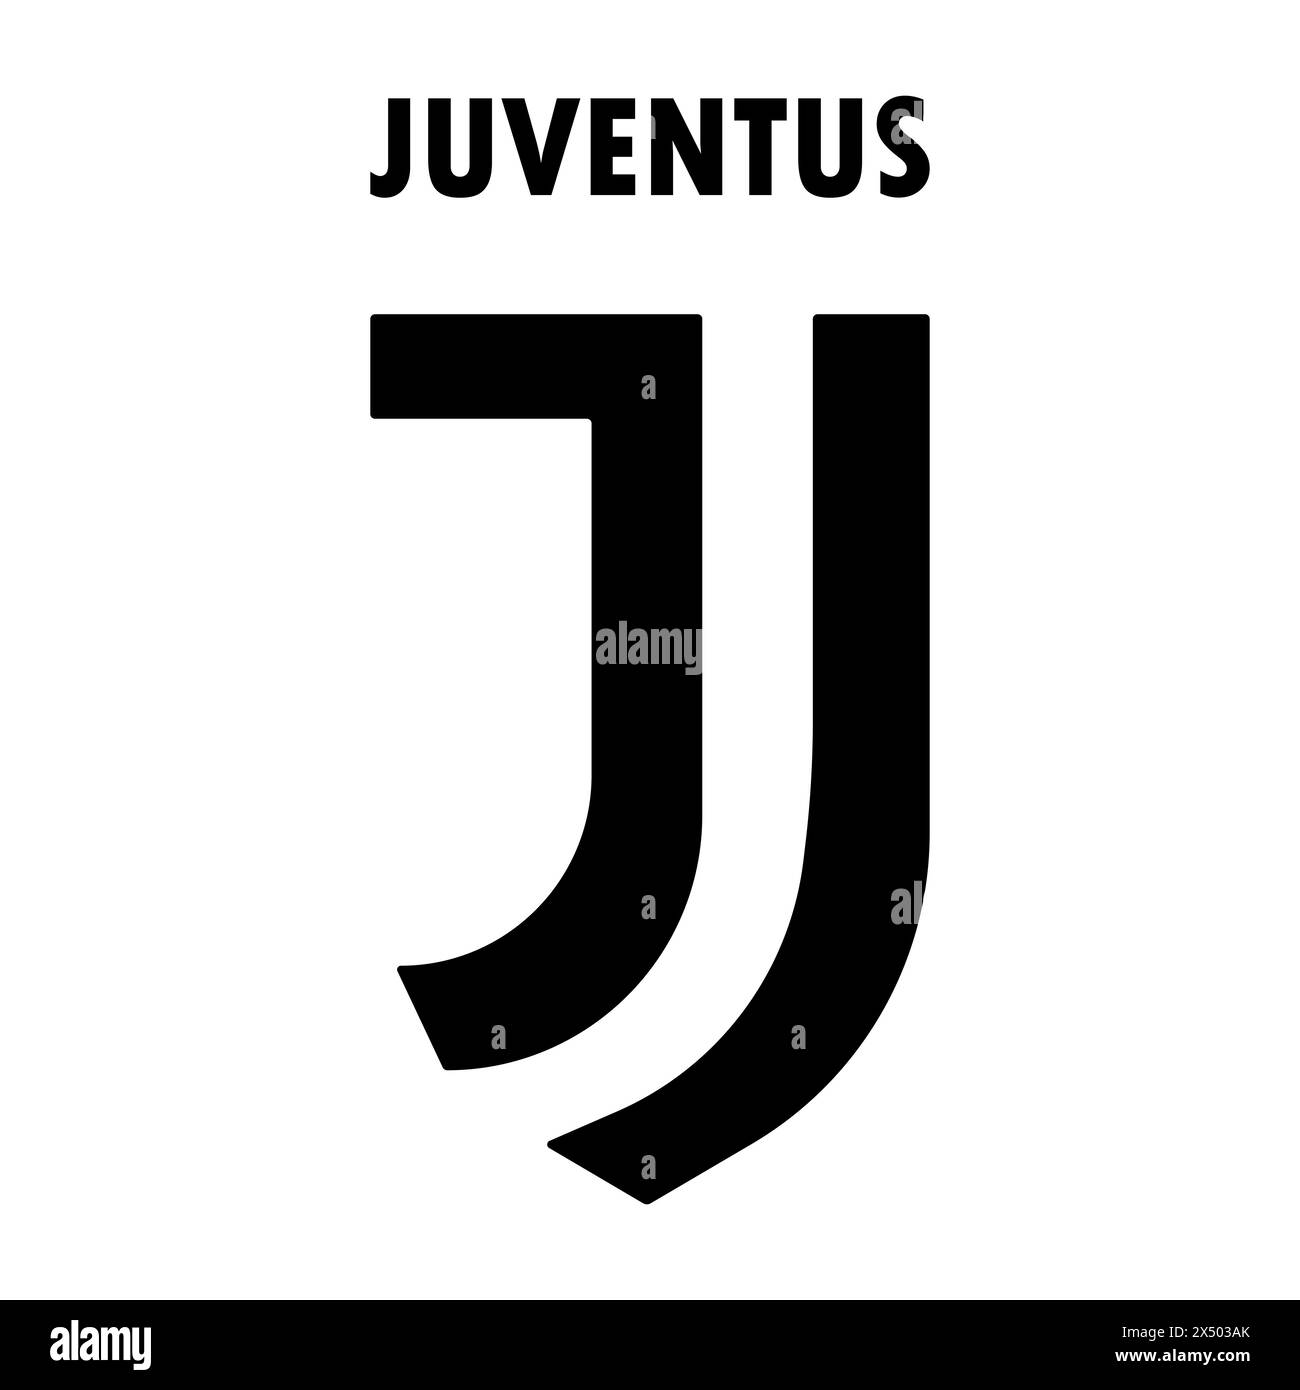 Emblema della Juventus FC su un iconico sfondo bianco e nero. Leggendario club di calcio, serie A italiana, stemma e colori iconici. Editoriale Illustrazione Vettoriale